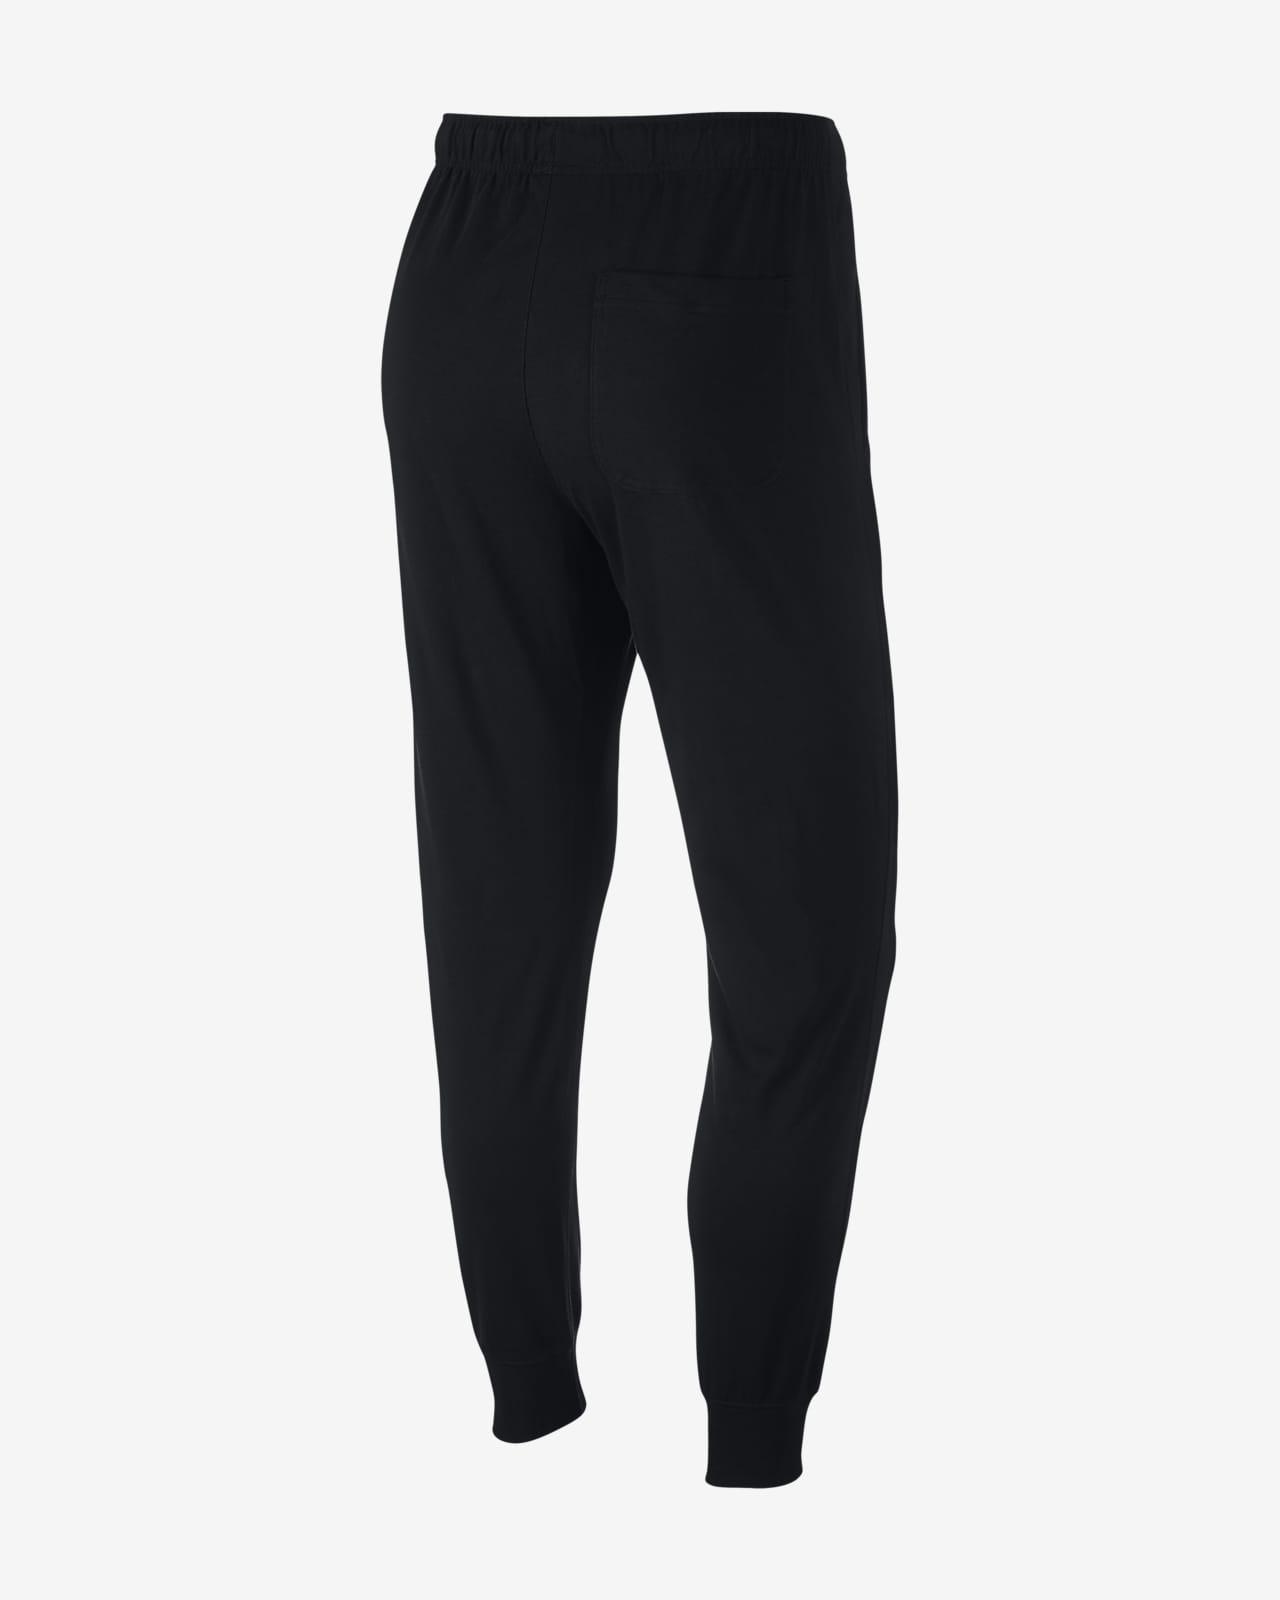 Nike Sportswear Club Fleece Men's Jersey Pants.